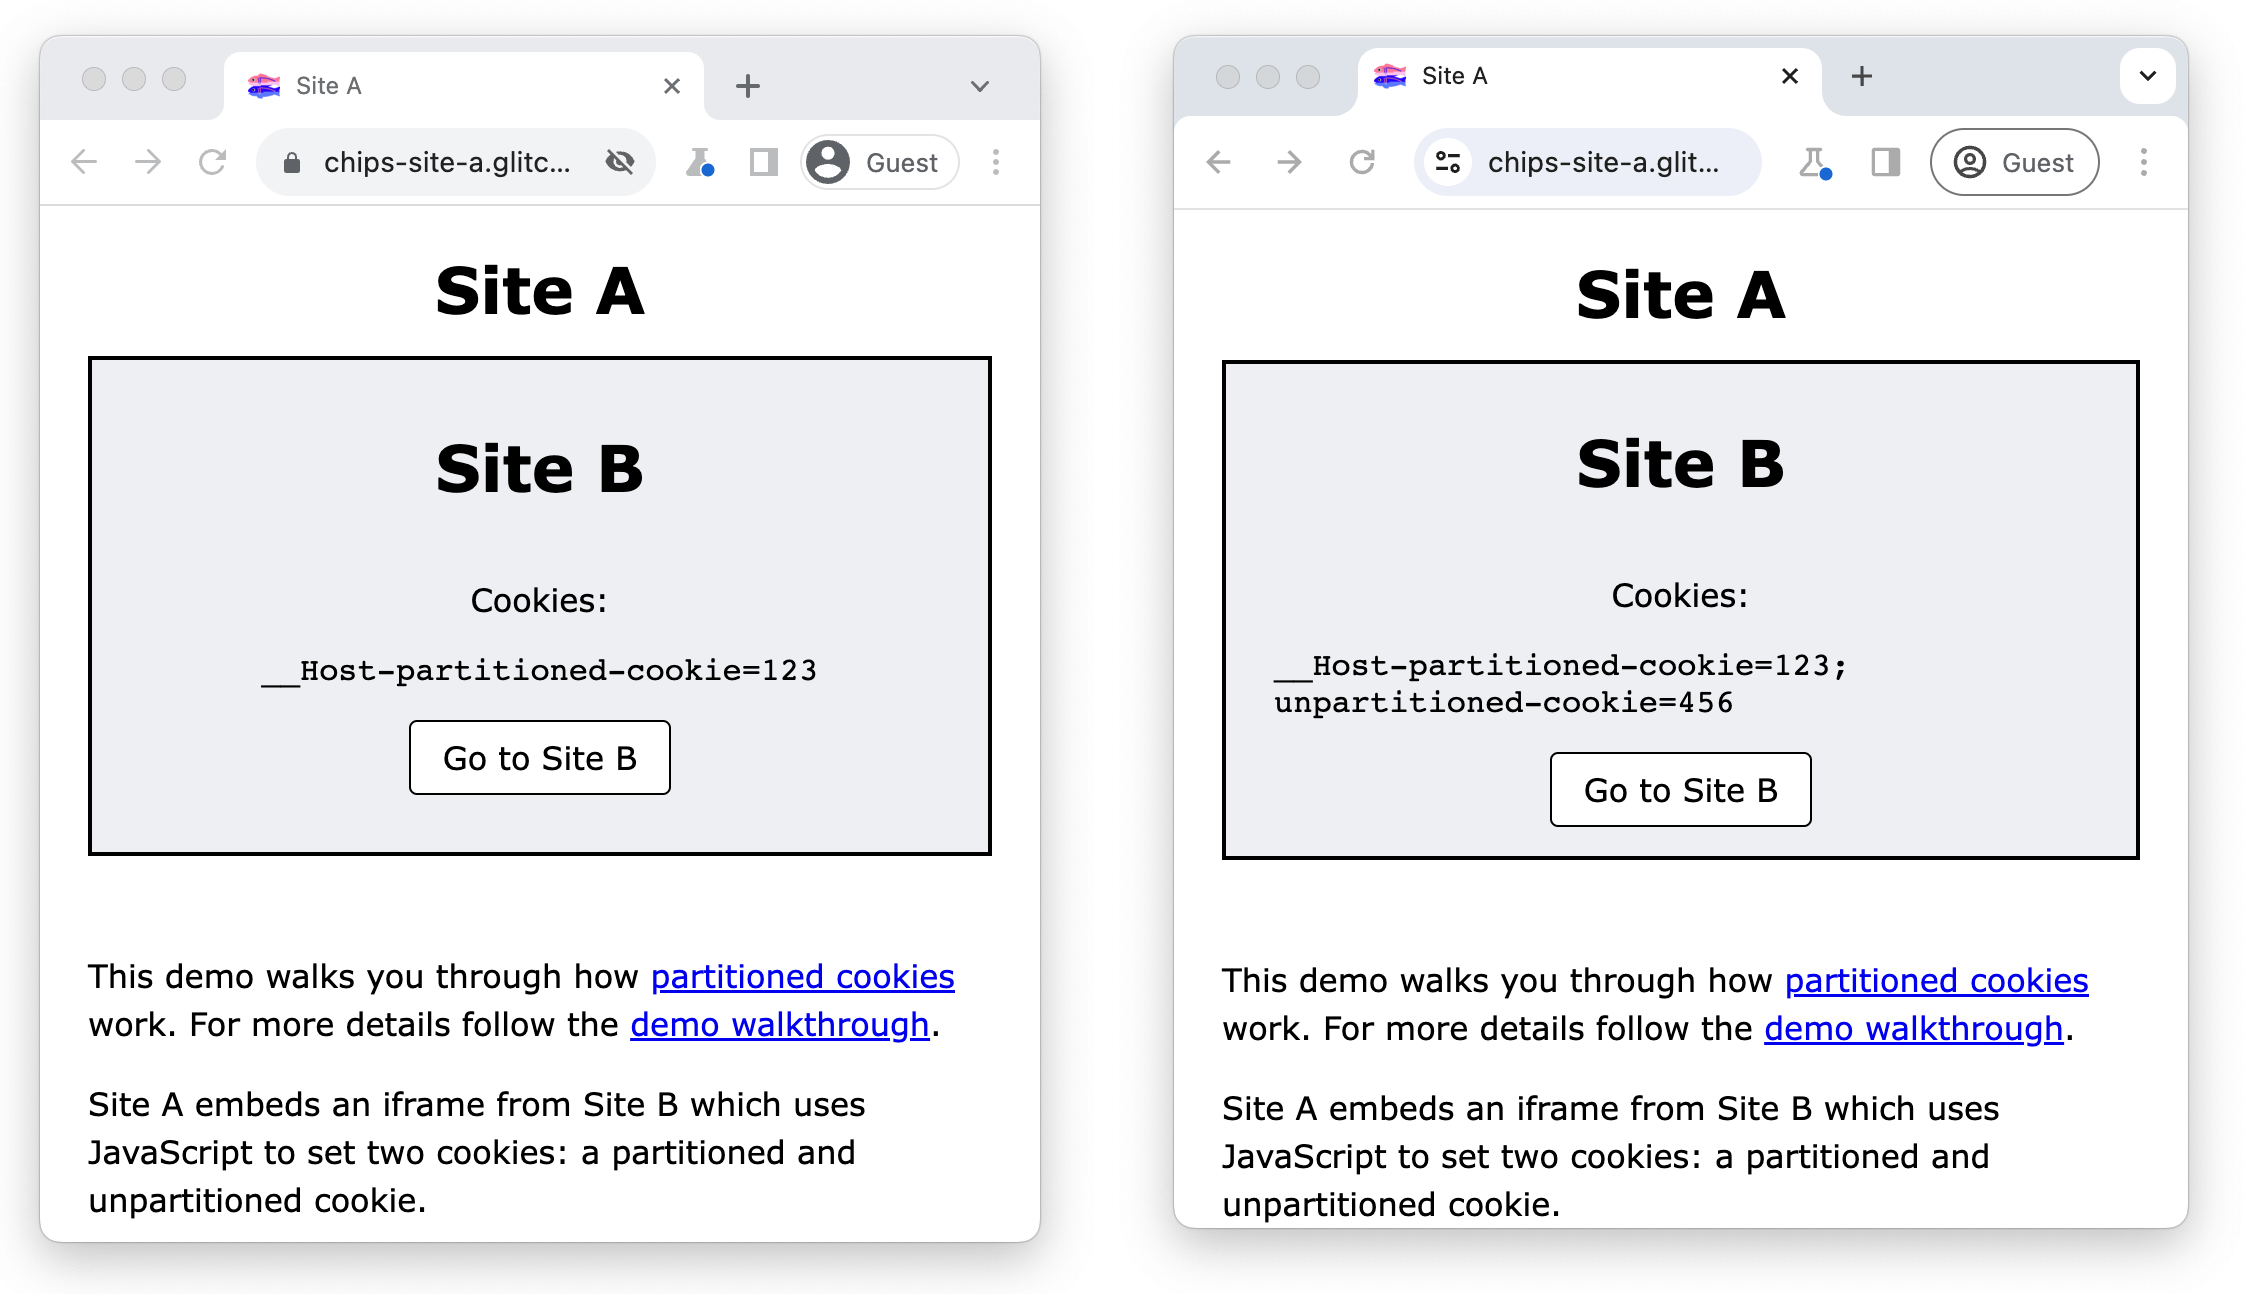 Les sites A et B